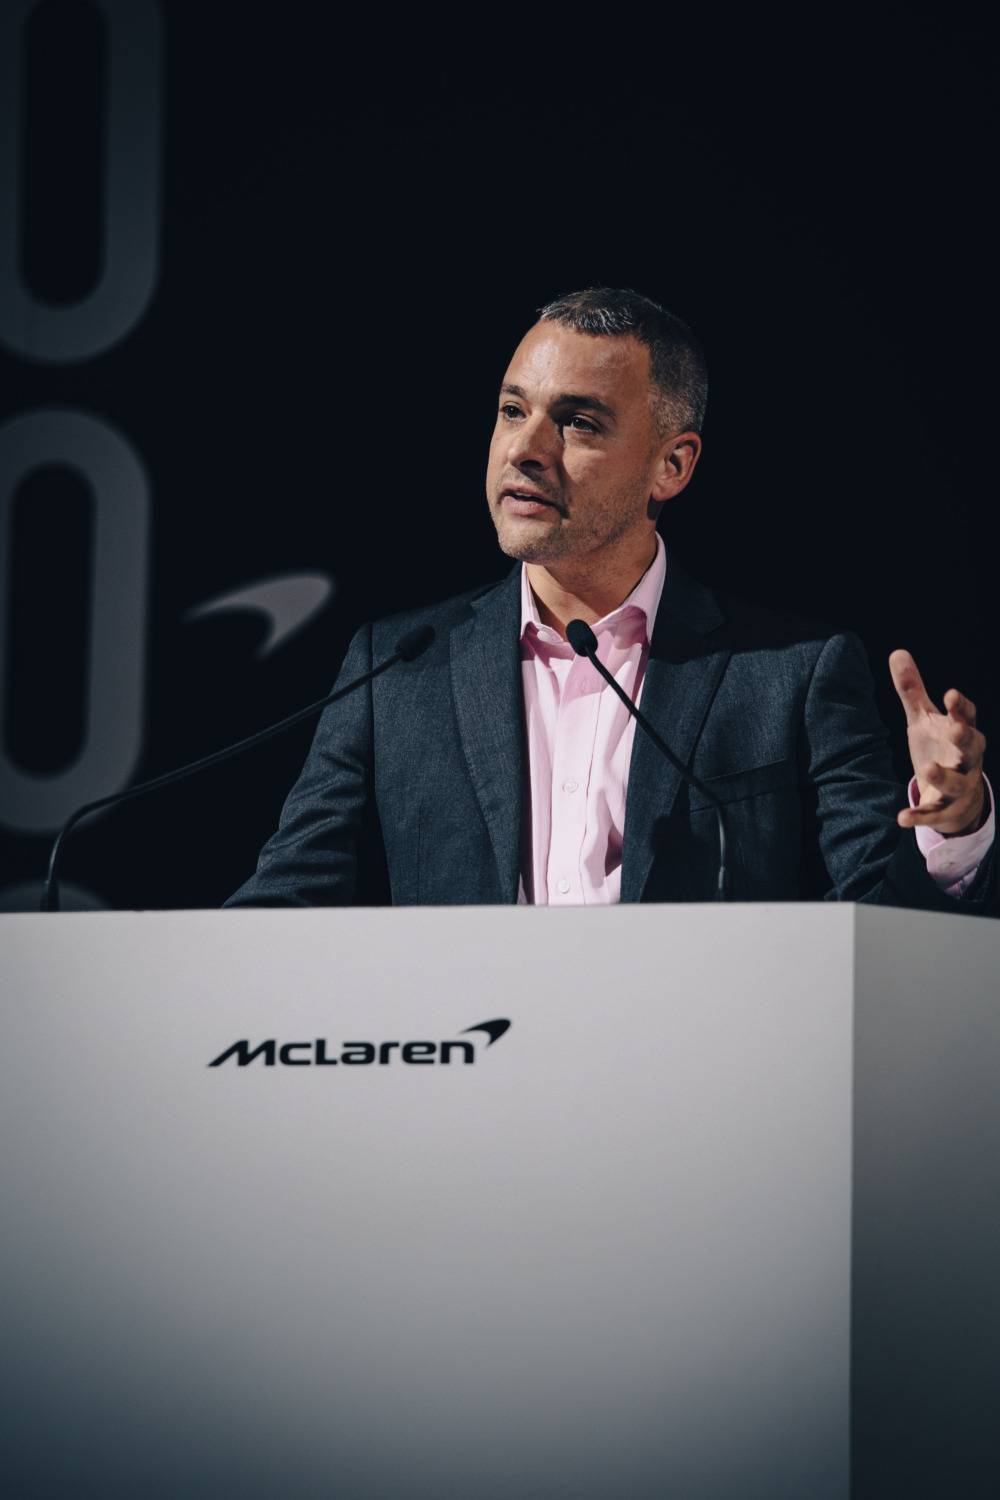 マクラーレンのブランドアンバサダーであるアダム・リーブス。日本とマクラーレンの縁、そしてロードカー部門における重要性をAUTOCAR JAPANに語った。